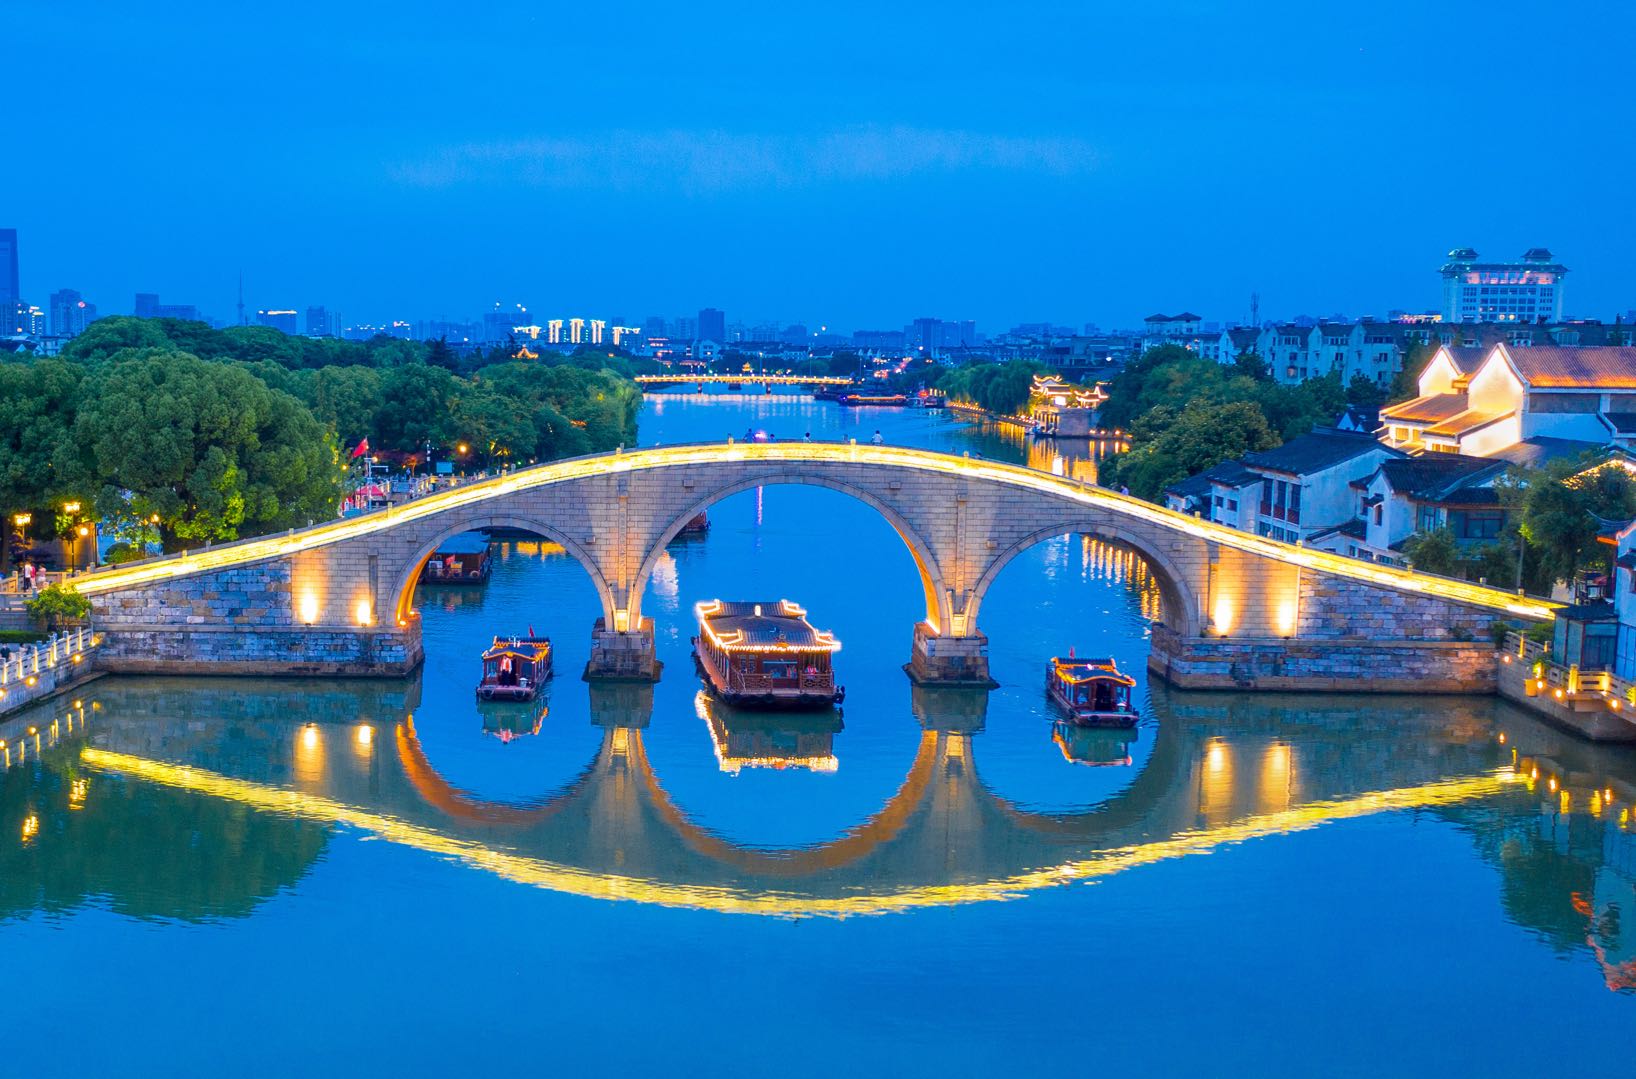 【携程攻略】苏州三桥景点,三桥指的是太平桥、吉利桥和长庆桥——同里古镇最著名的三座石桥，有…